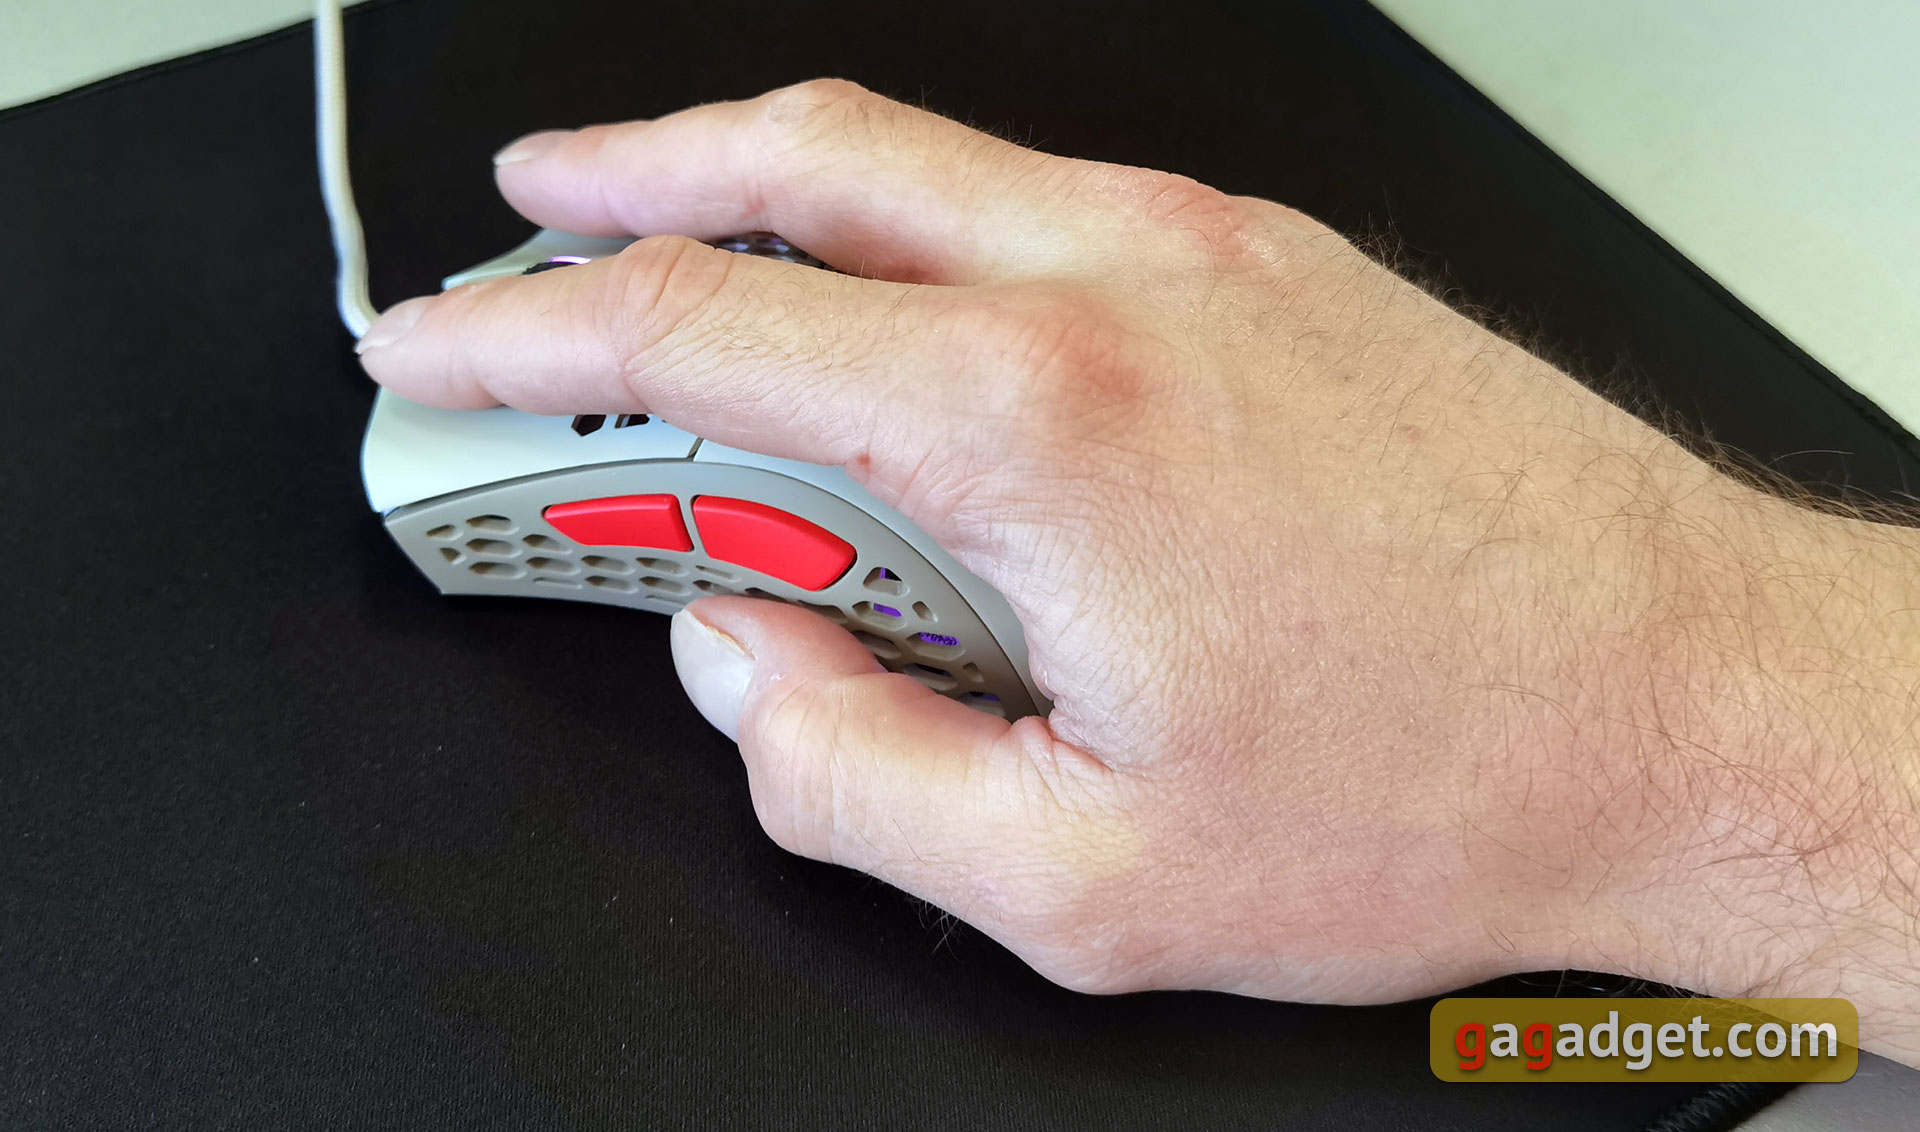 2E Gaming HyperSpeed Pro Überblick: Eine leichte Gaming-Maus mit einem großartigen Sensor-16